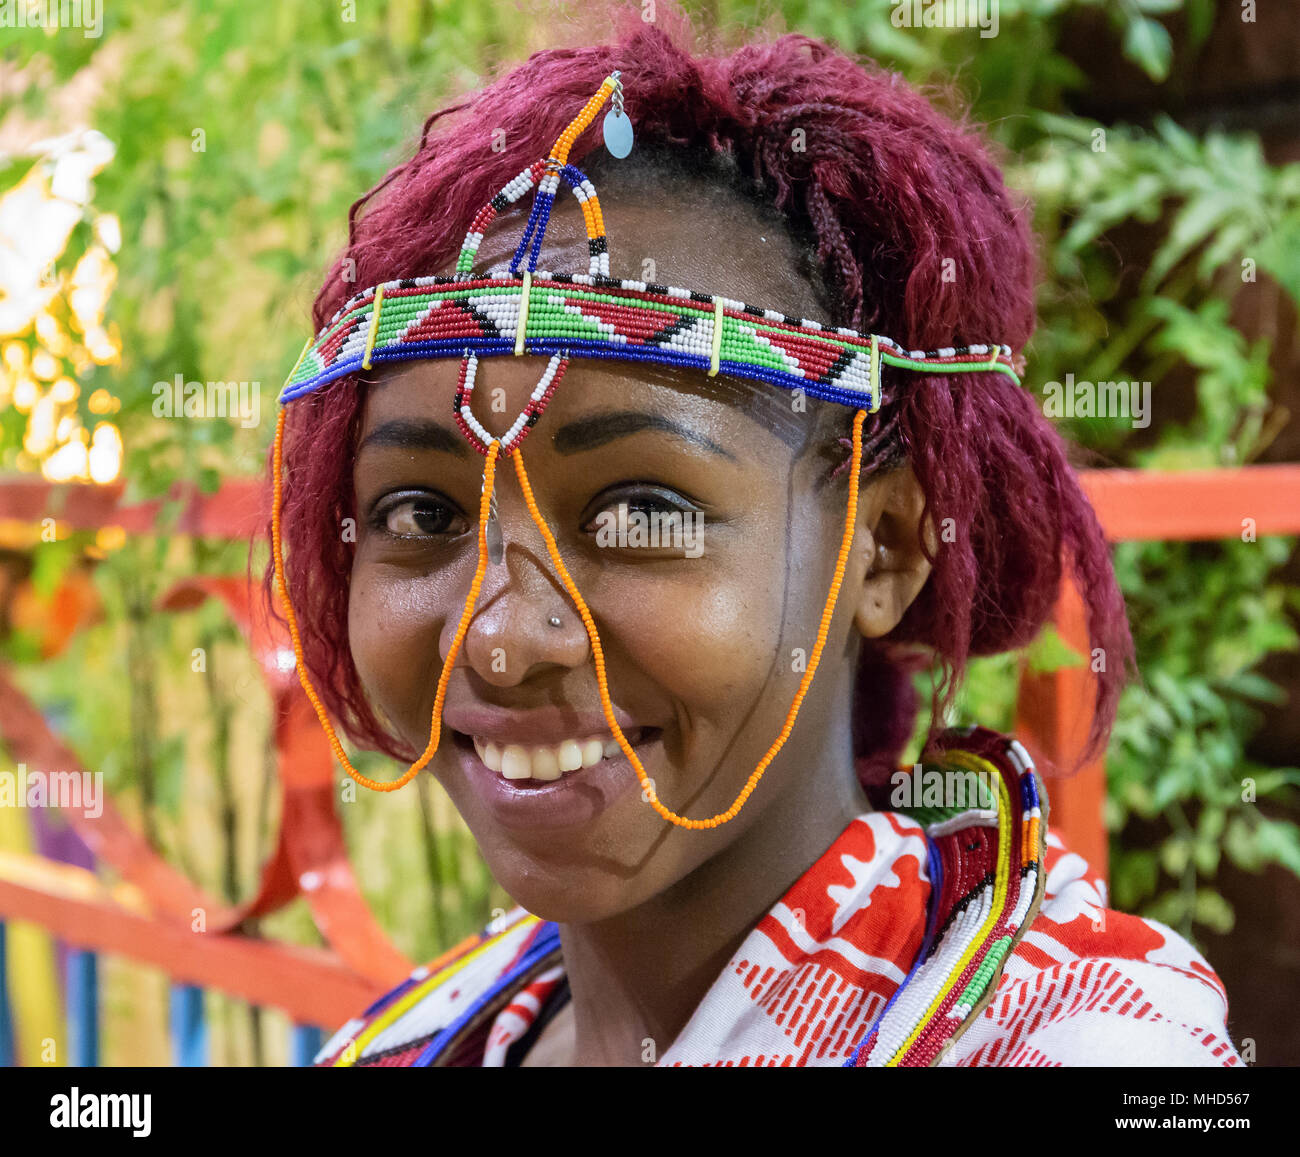 Dubaï, Émirats arabes unis - 4 décembre 2017 : Portrait d'une jeune fille africaine pour satisfaire les clients dans le pavillon de l'Afrique centre de divertissement Global Village Banque D'Images